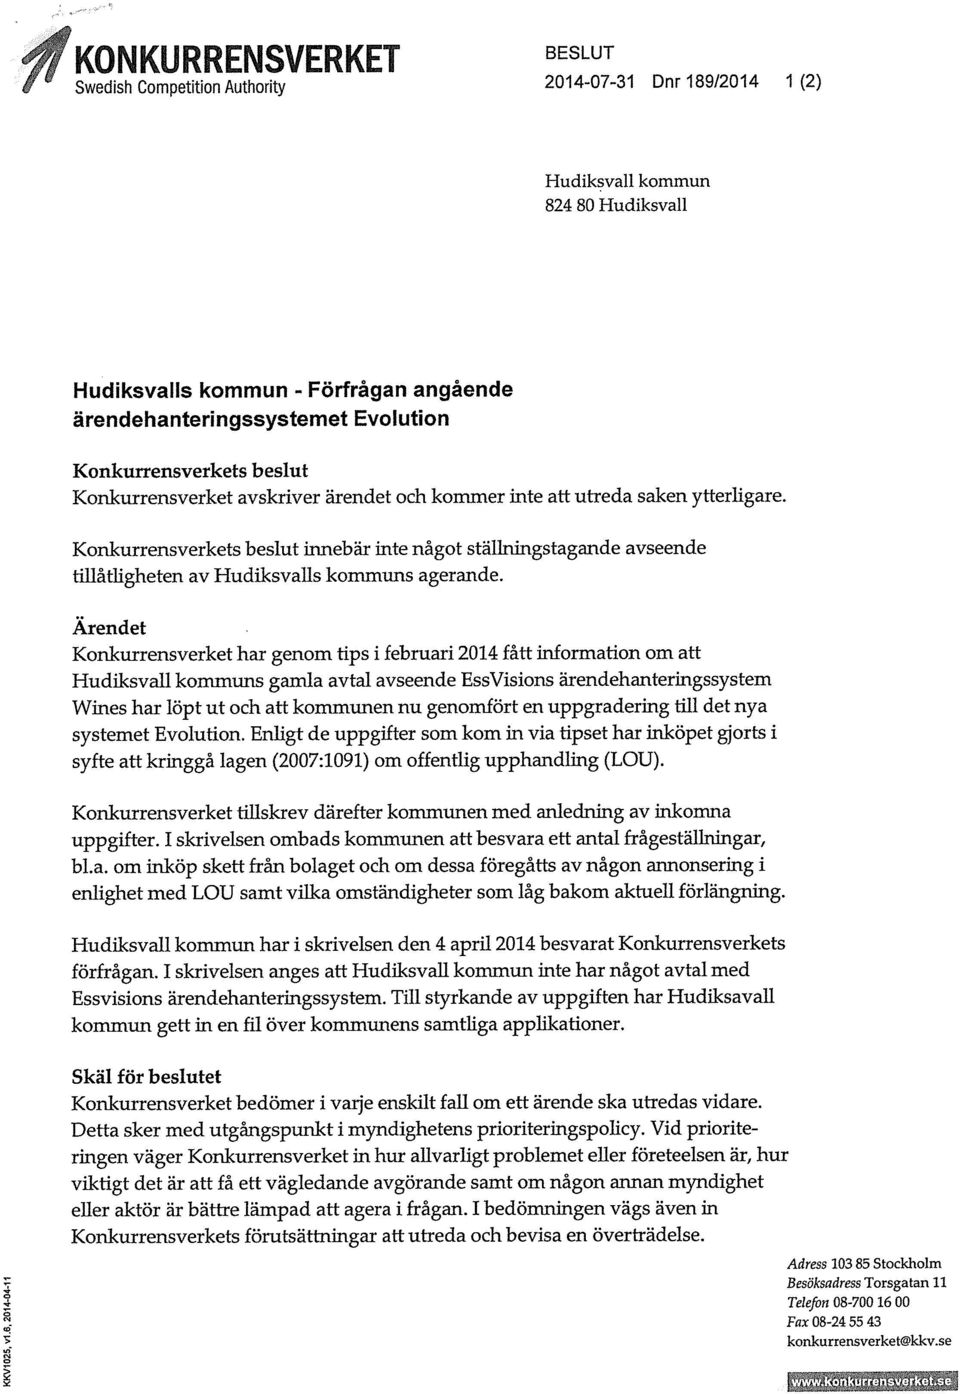 Ärendet Konkurrensverket har genom tips i februari 2014 fått information om att Hudiksvall kommuns gamla avtal avseende Ess Visions ärendehanteringssystem Wines har löpt ut och att kommunen nu